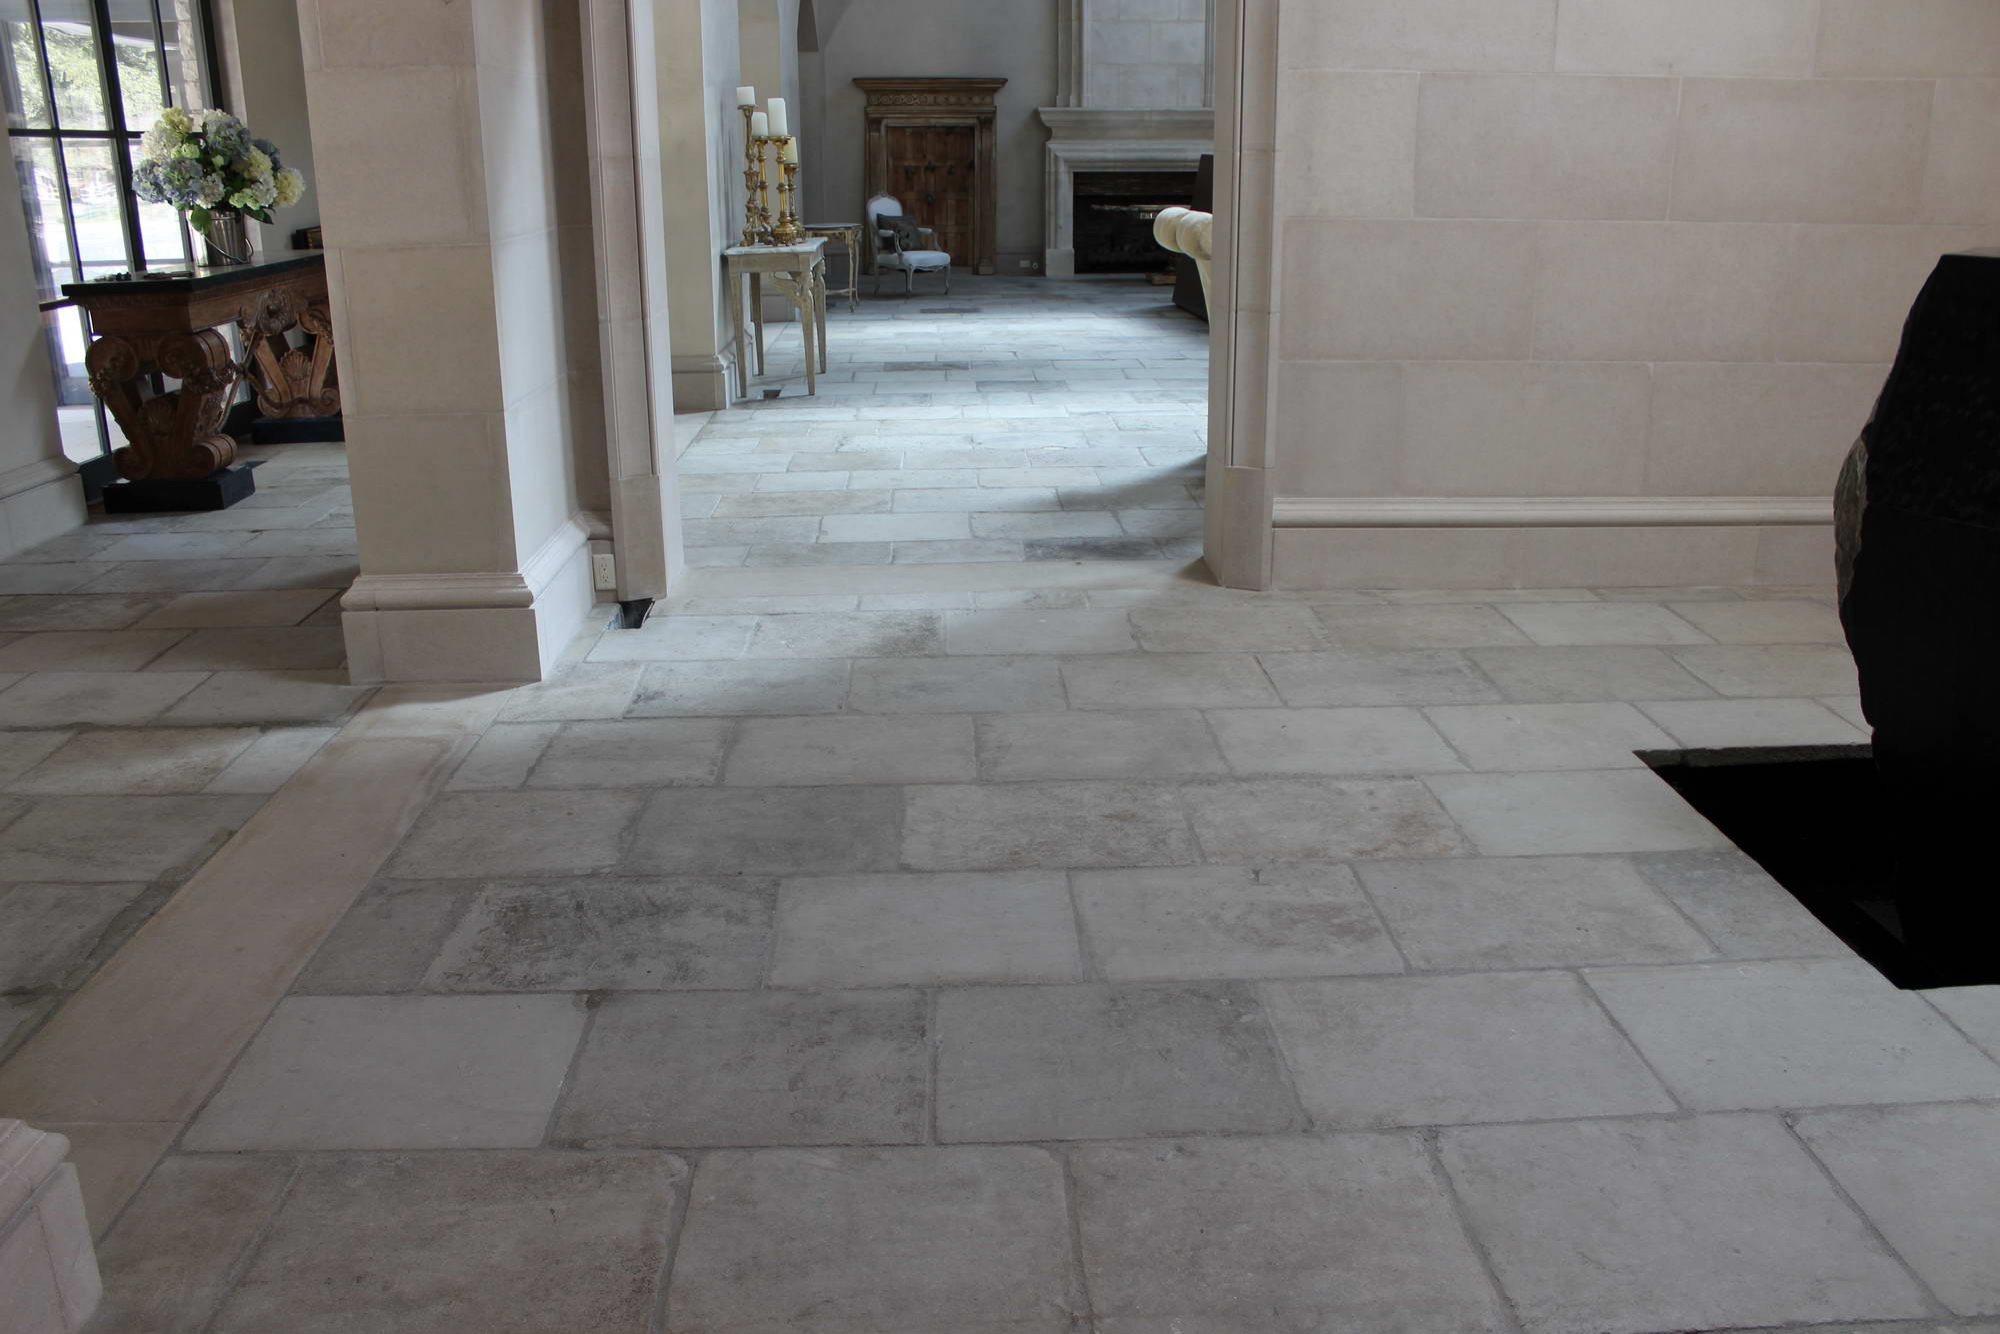 French Limestone Flooring Houzz, French Limestone Flooring Ireland